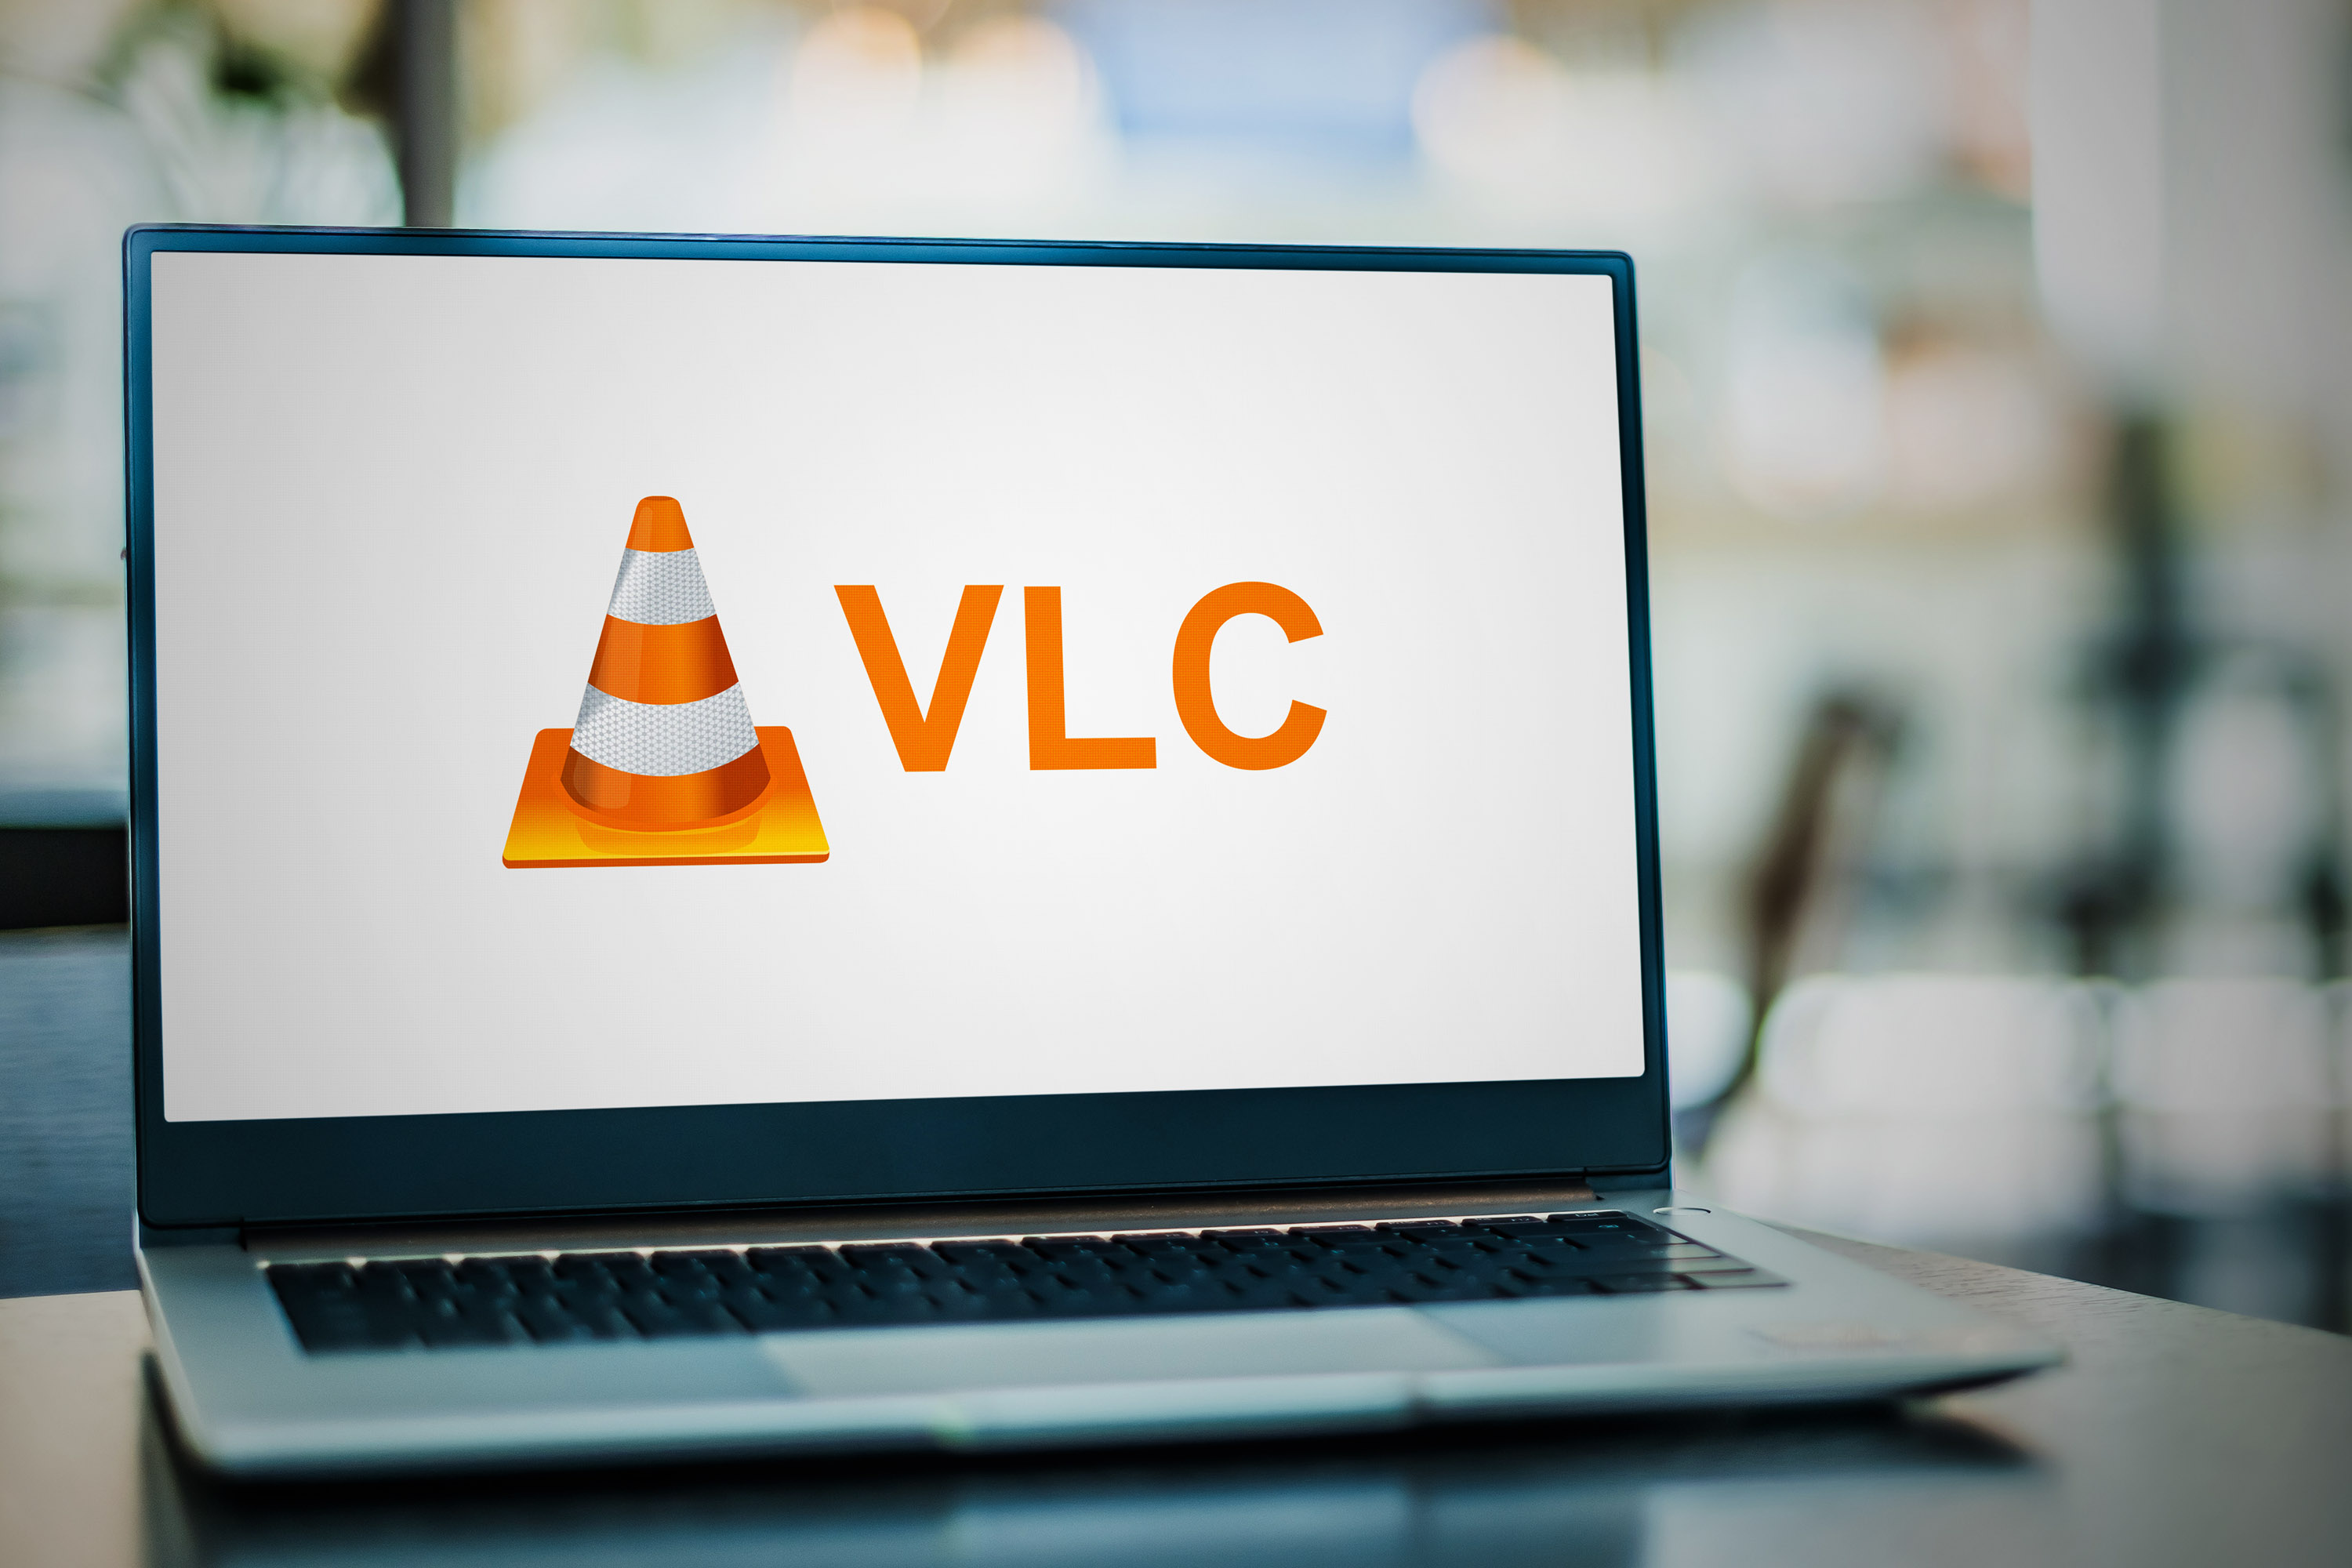 Vous avez une carte graphique NVIDIA ? VLC va rendre vos vidéos vraiment plus belles !